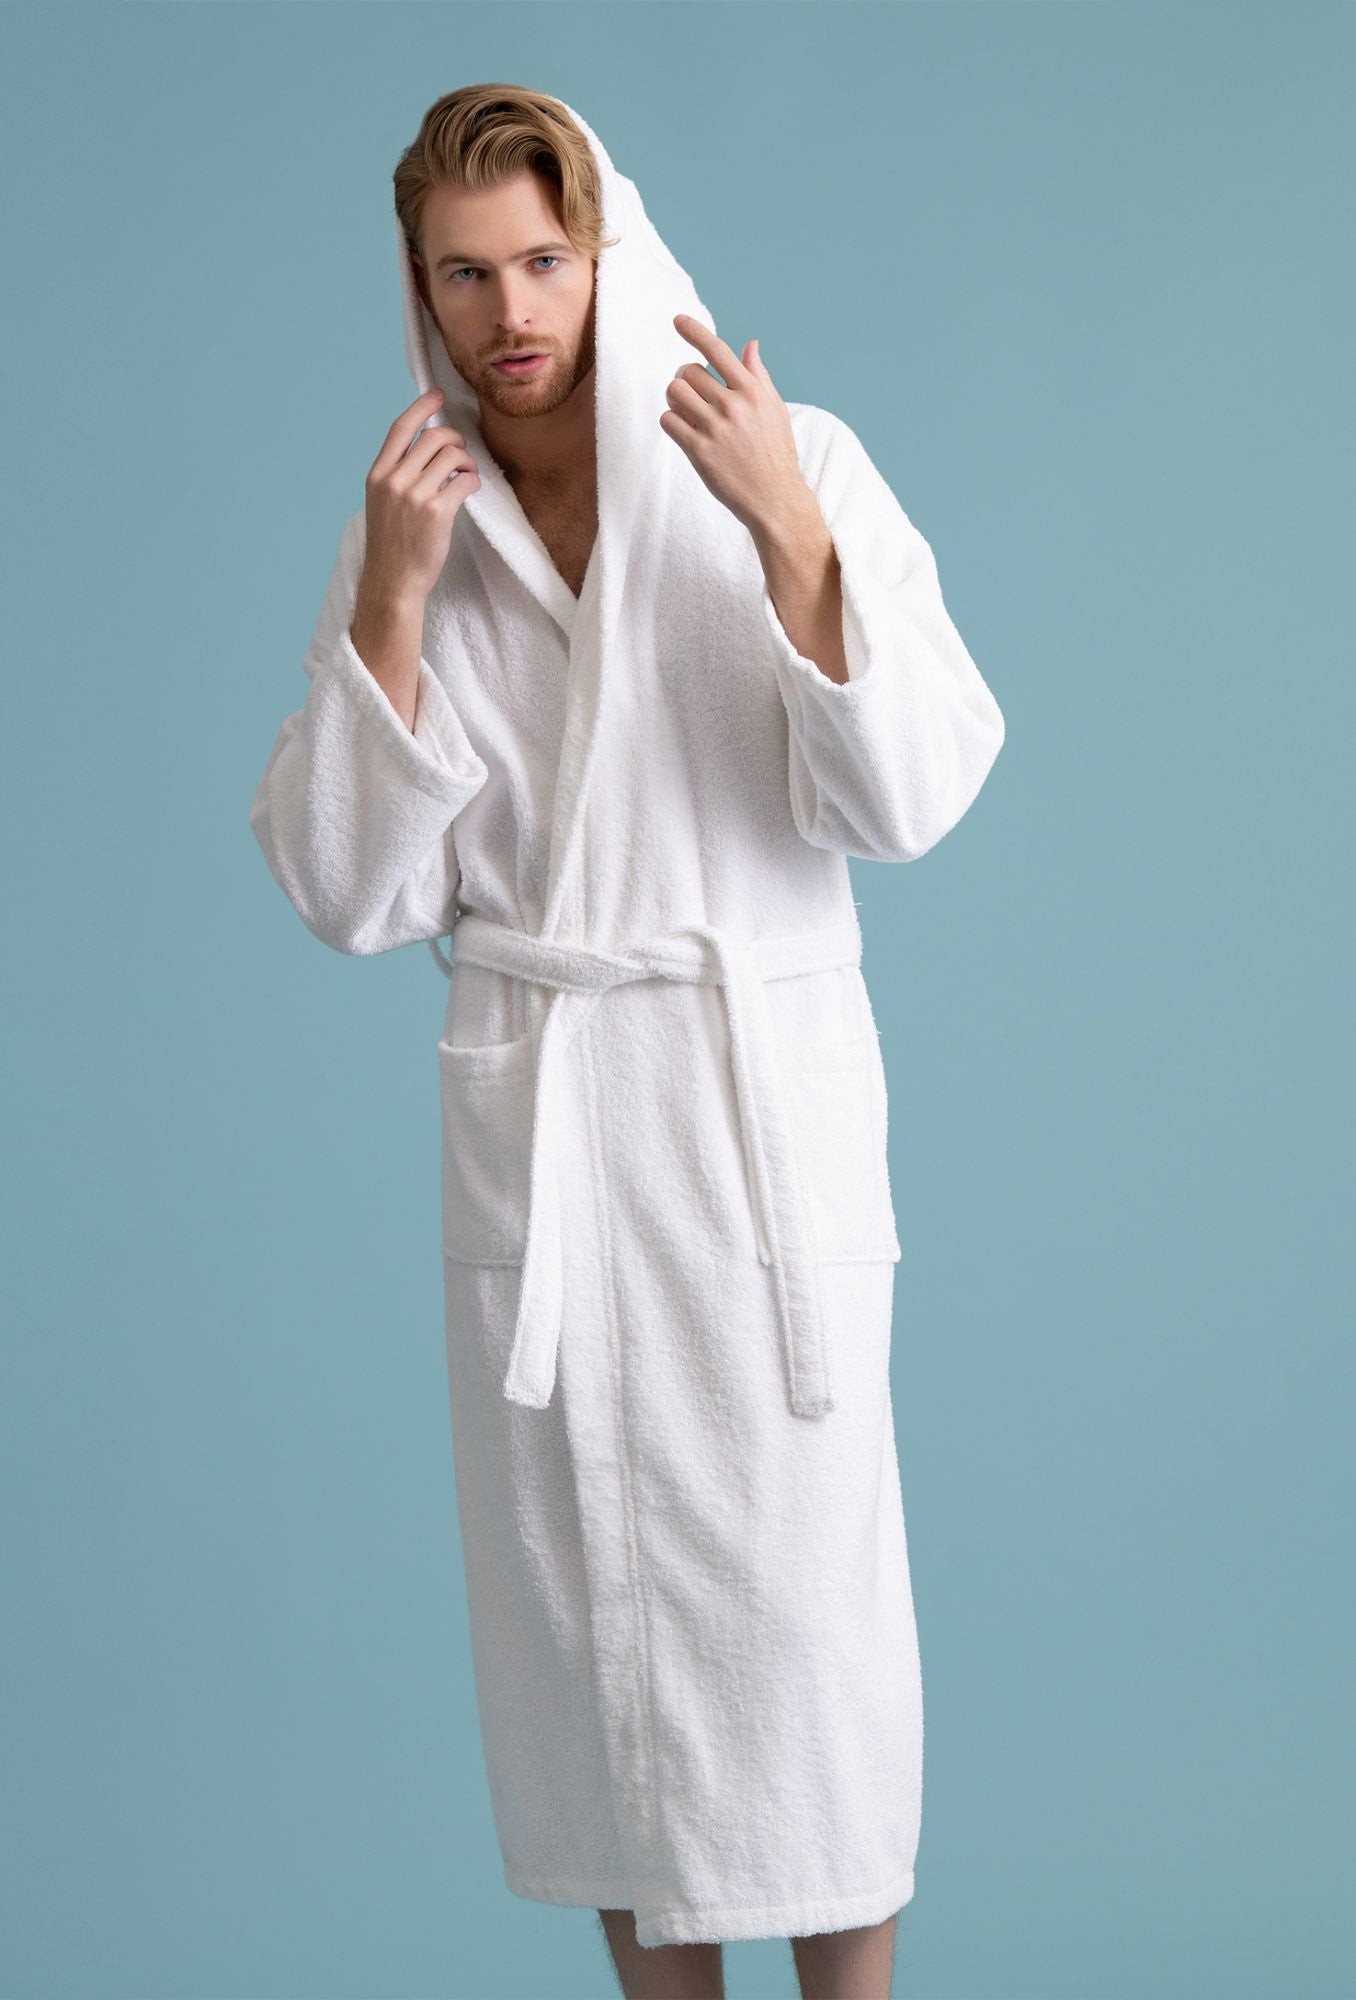 Men's Hooded Robe, Turkish Cotton Terry Hooded Spa White Bathrobe